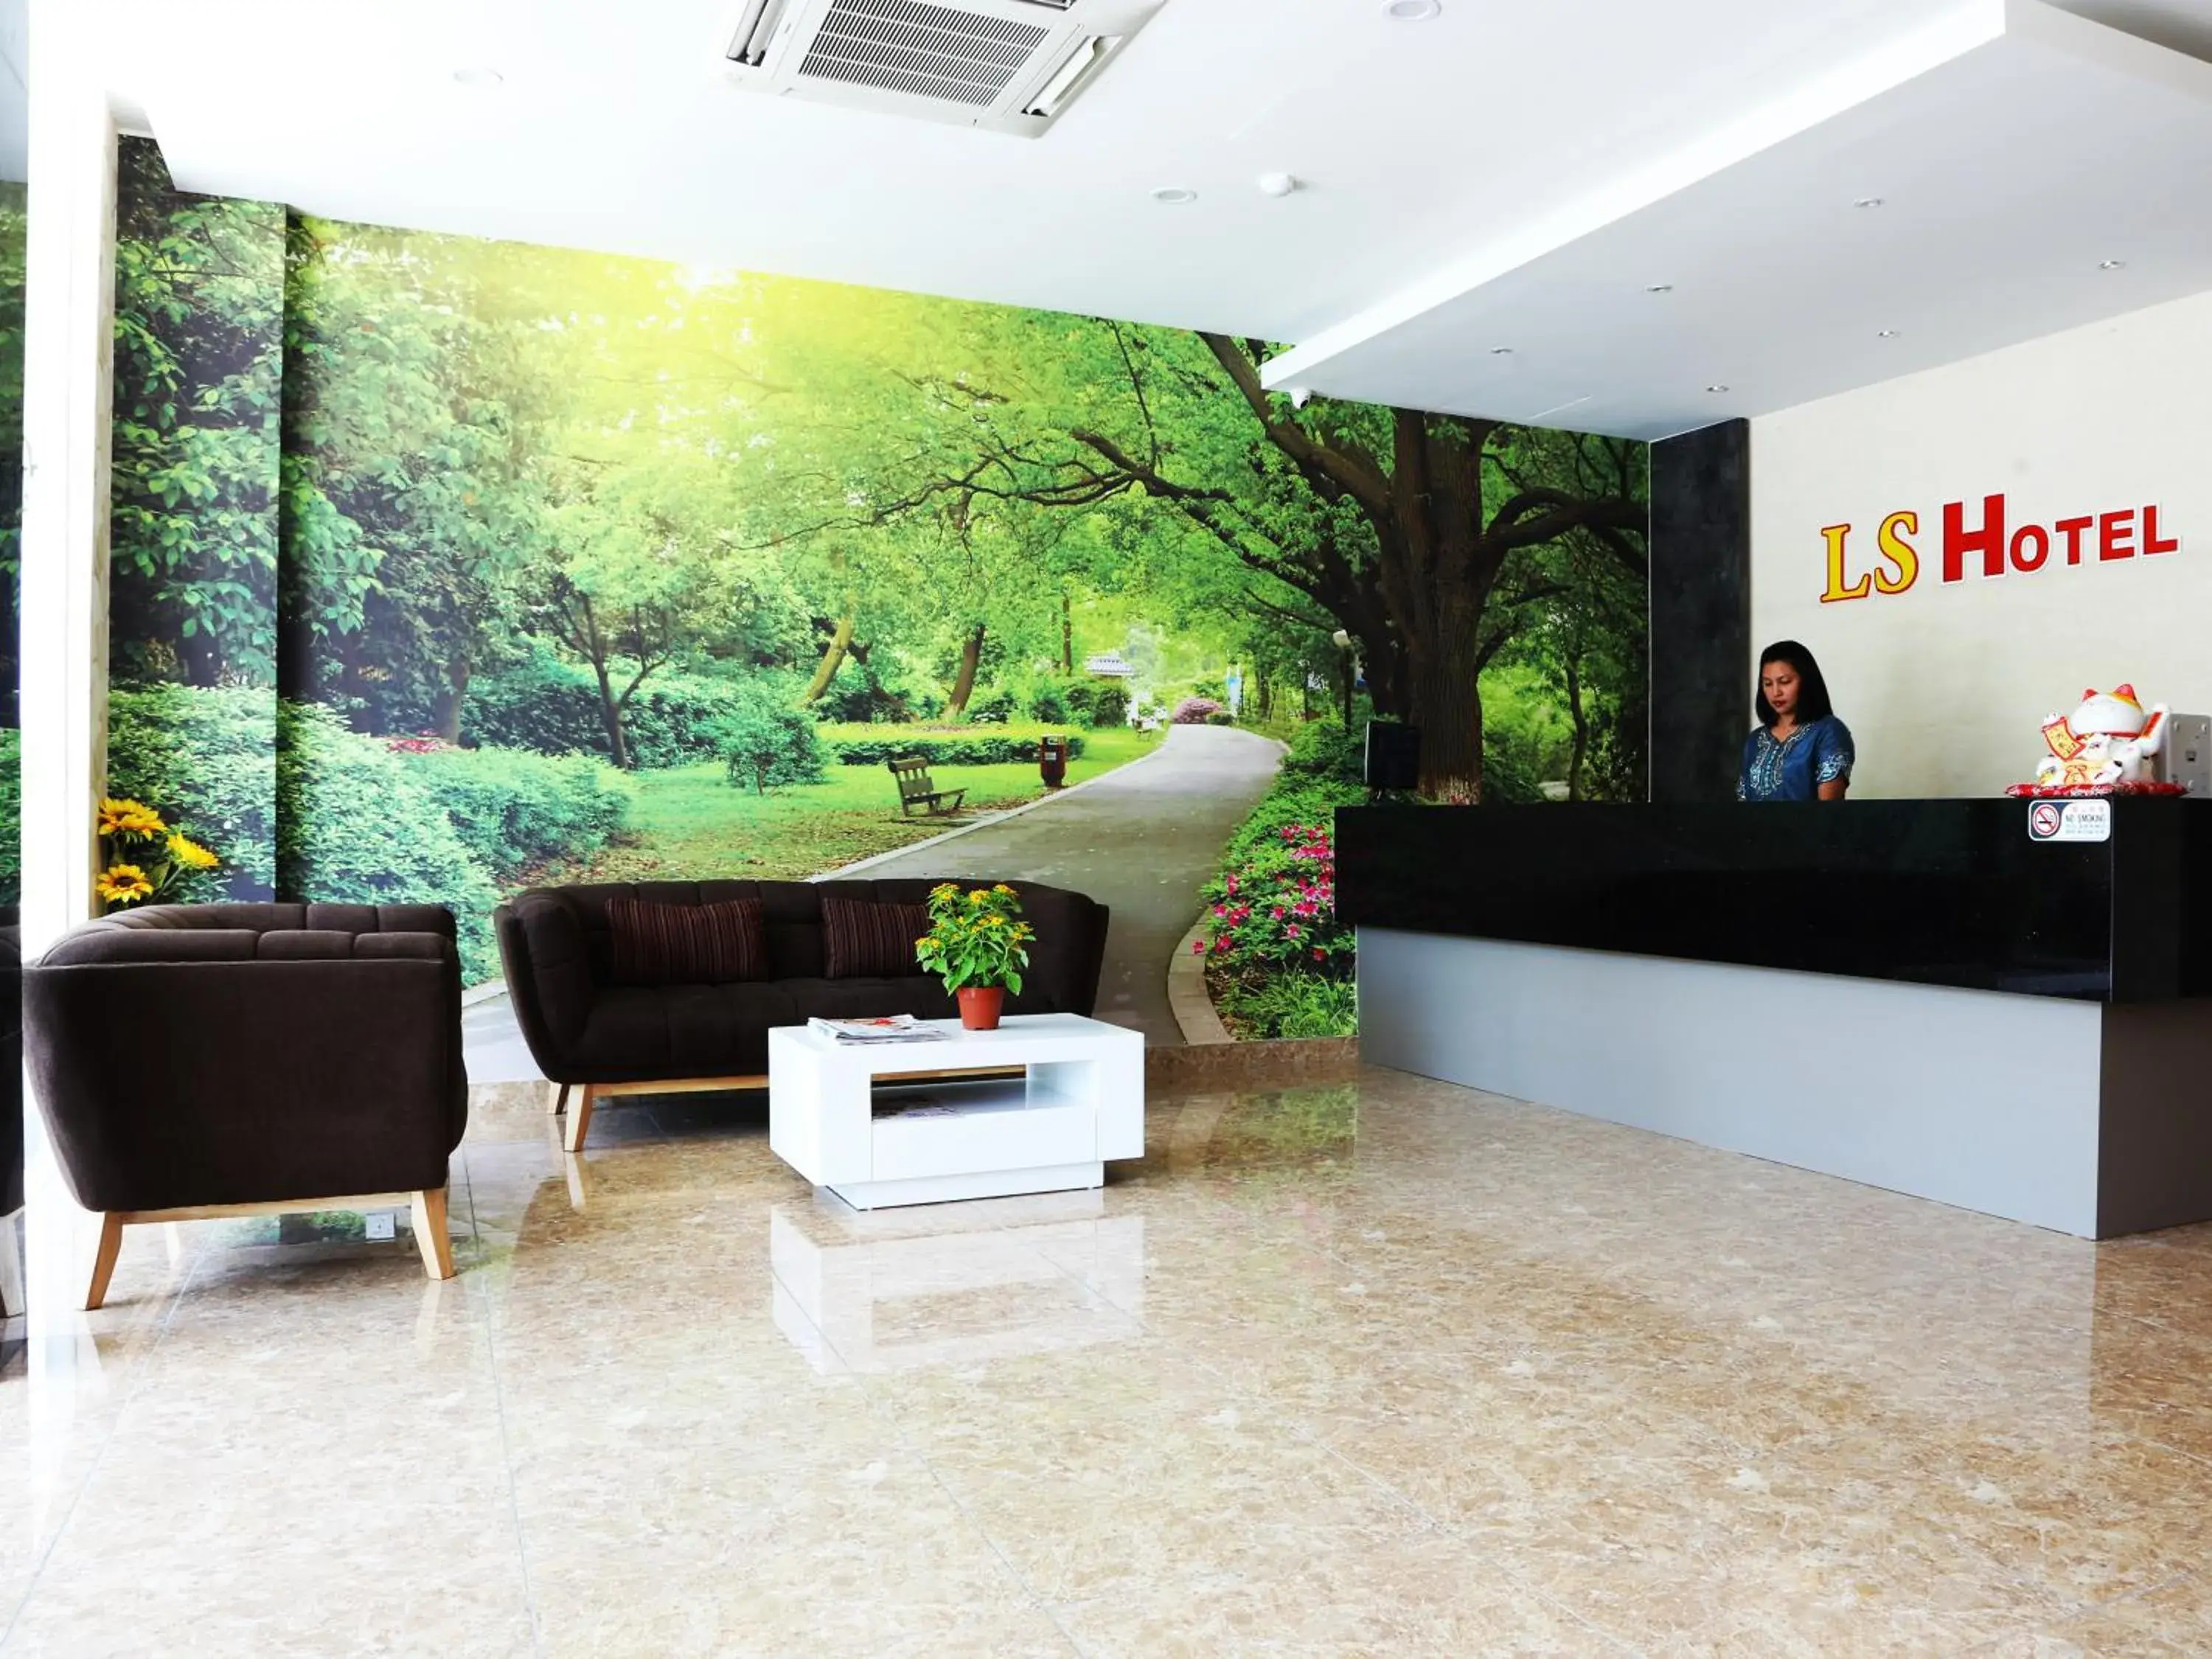 Lobby or reception, Lobby/Reception in LS Hotel